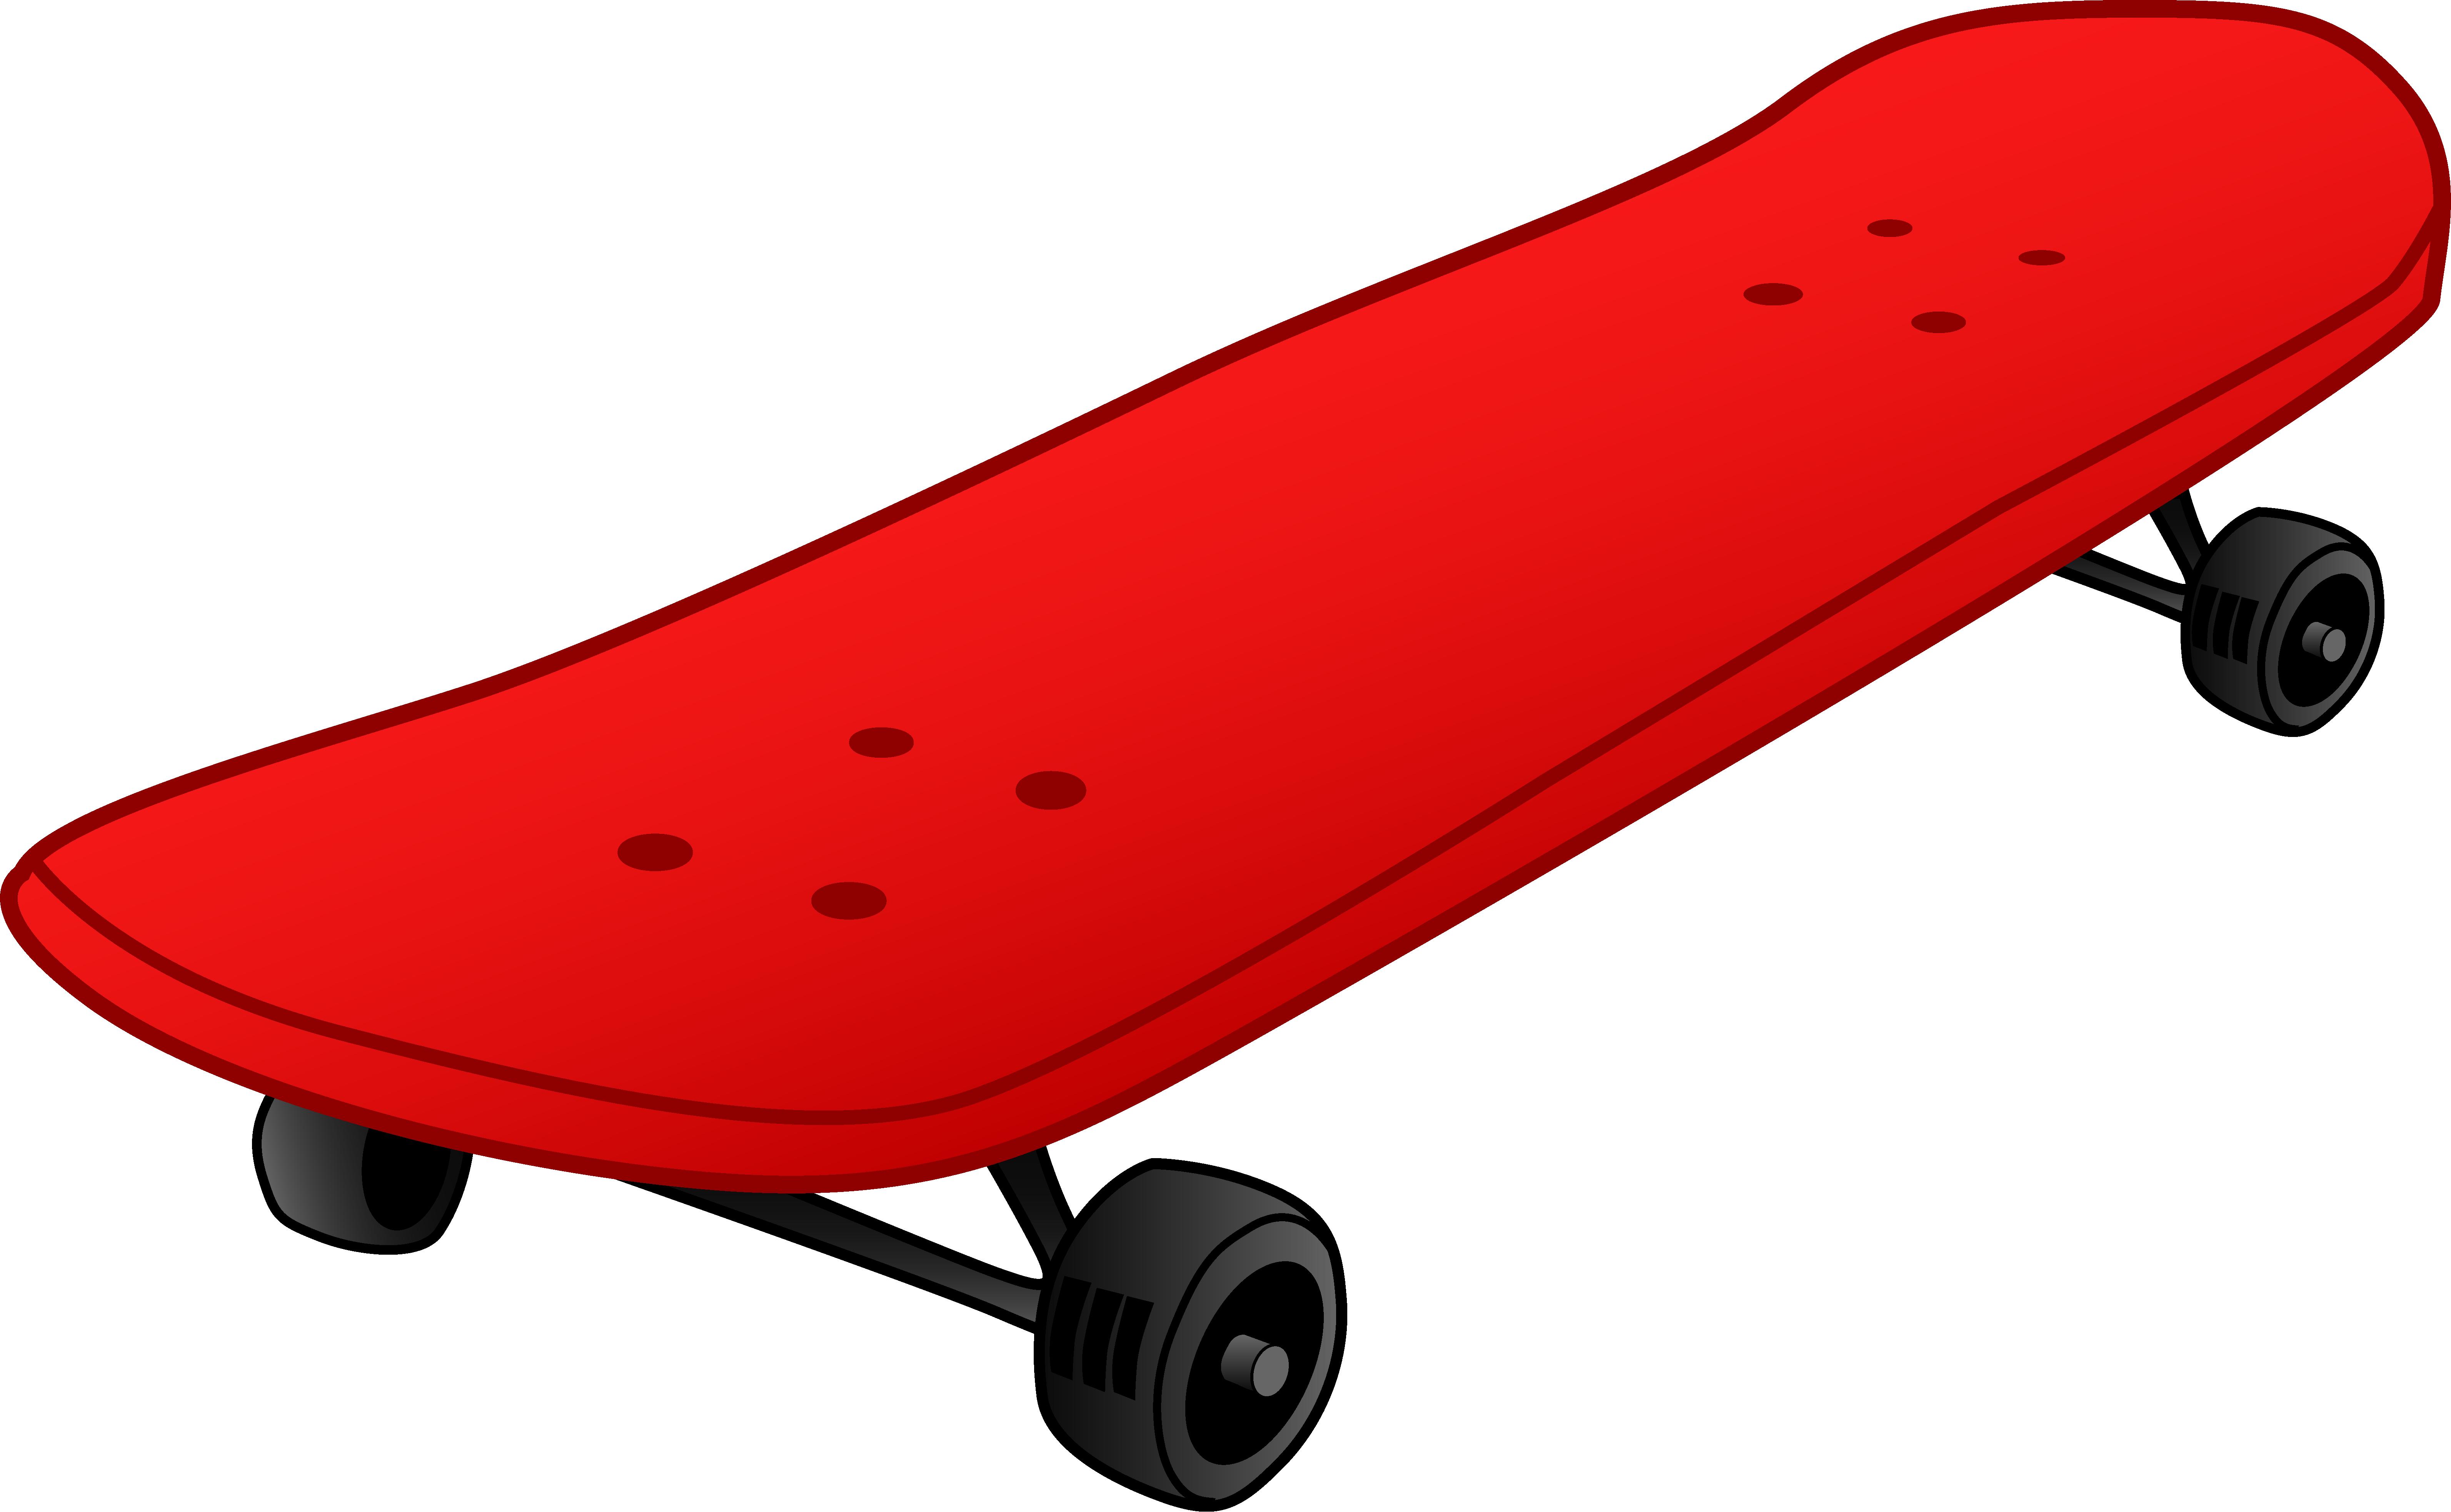 Download Skateboard PNG Image FreePNGImg